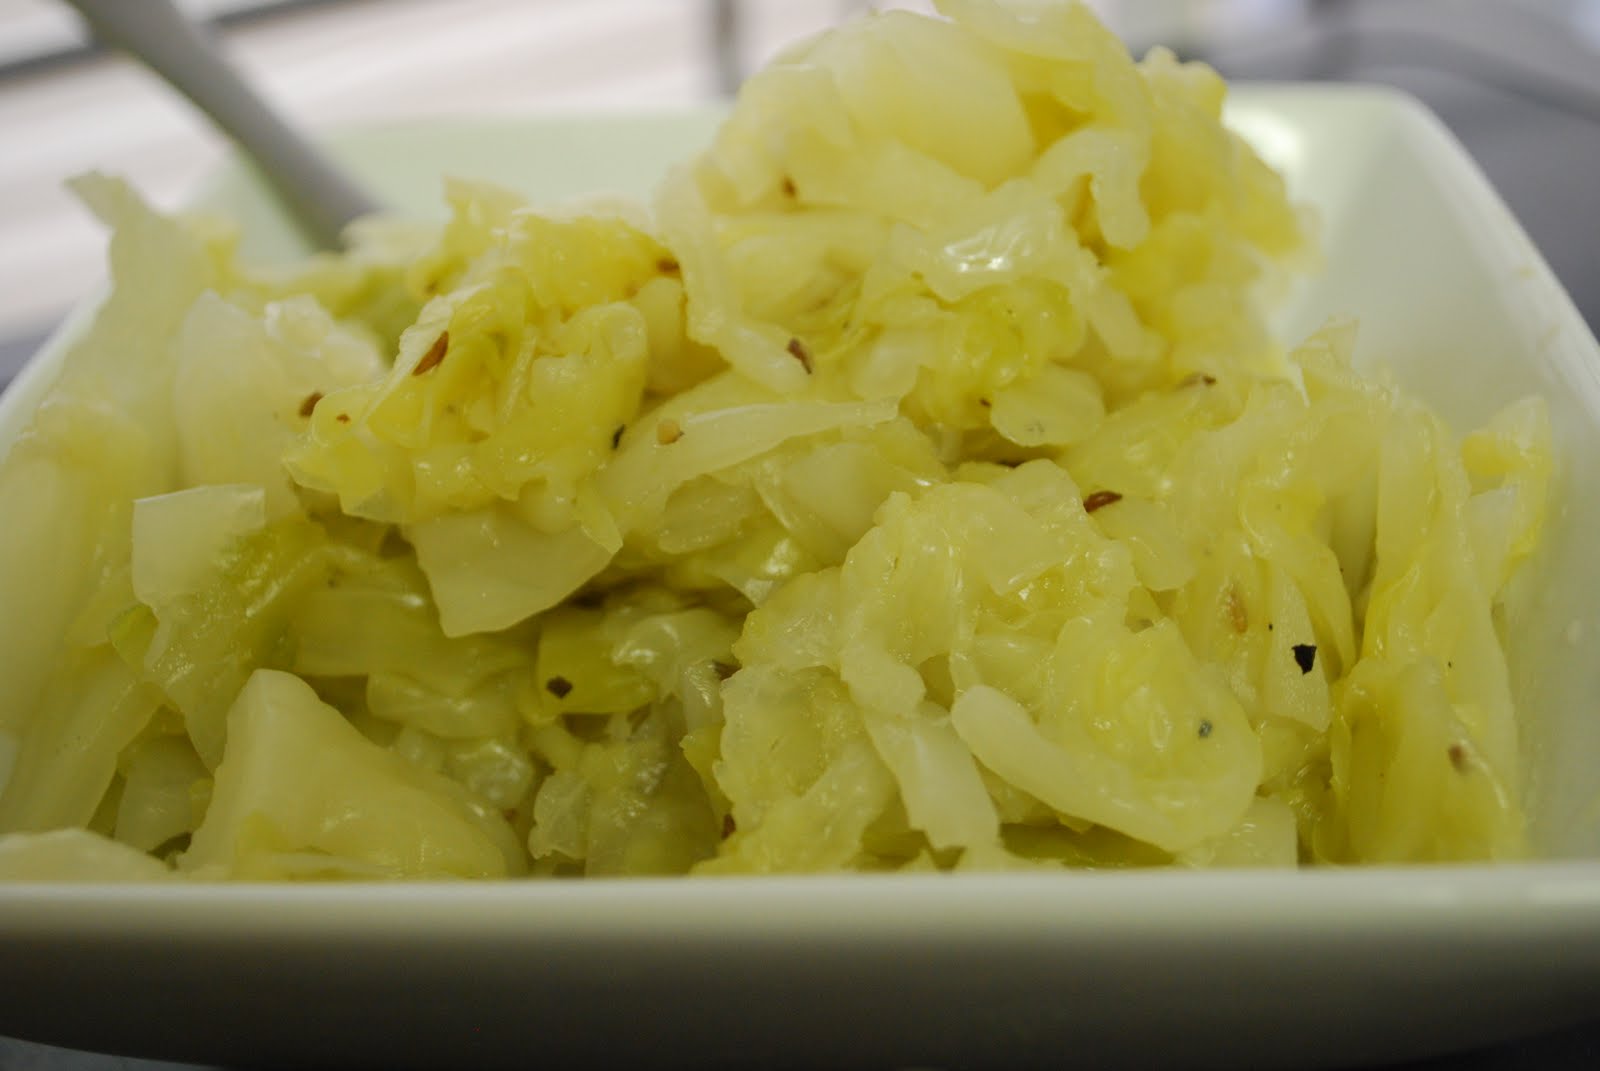 Салат с капустой и растительным маслом